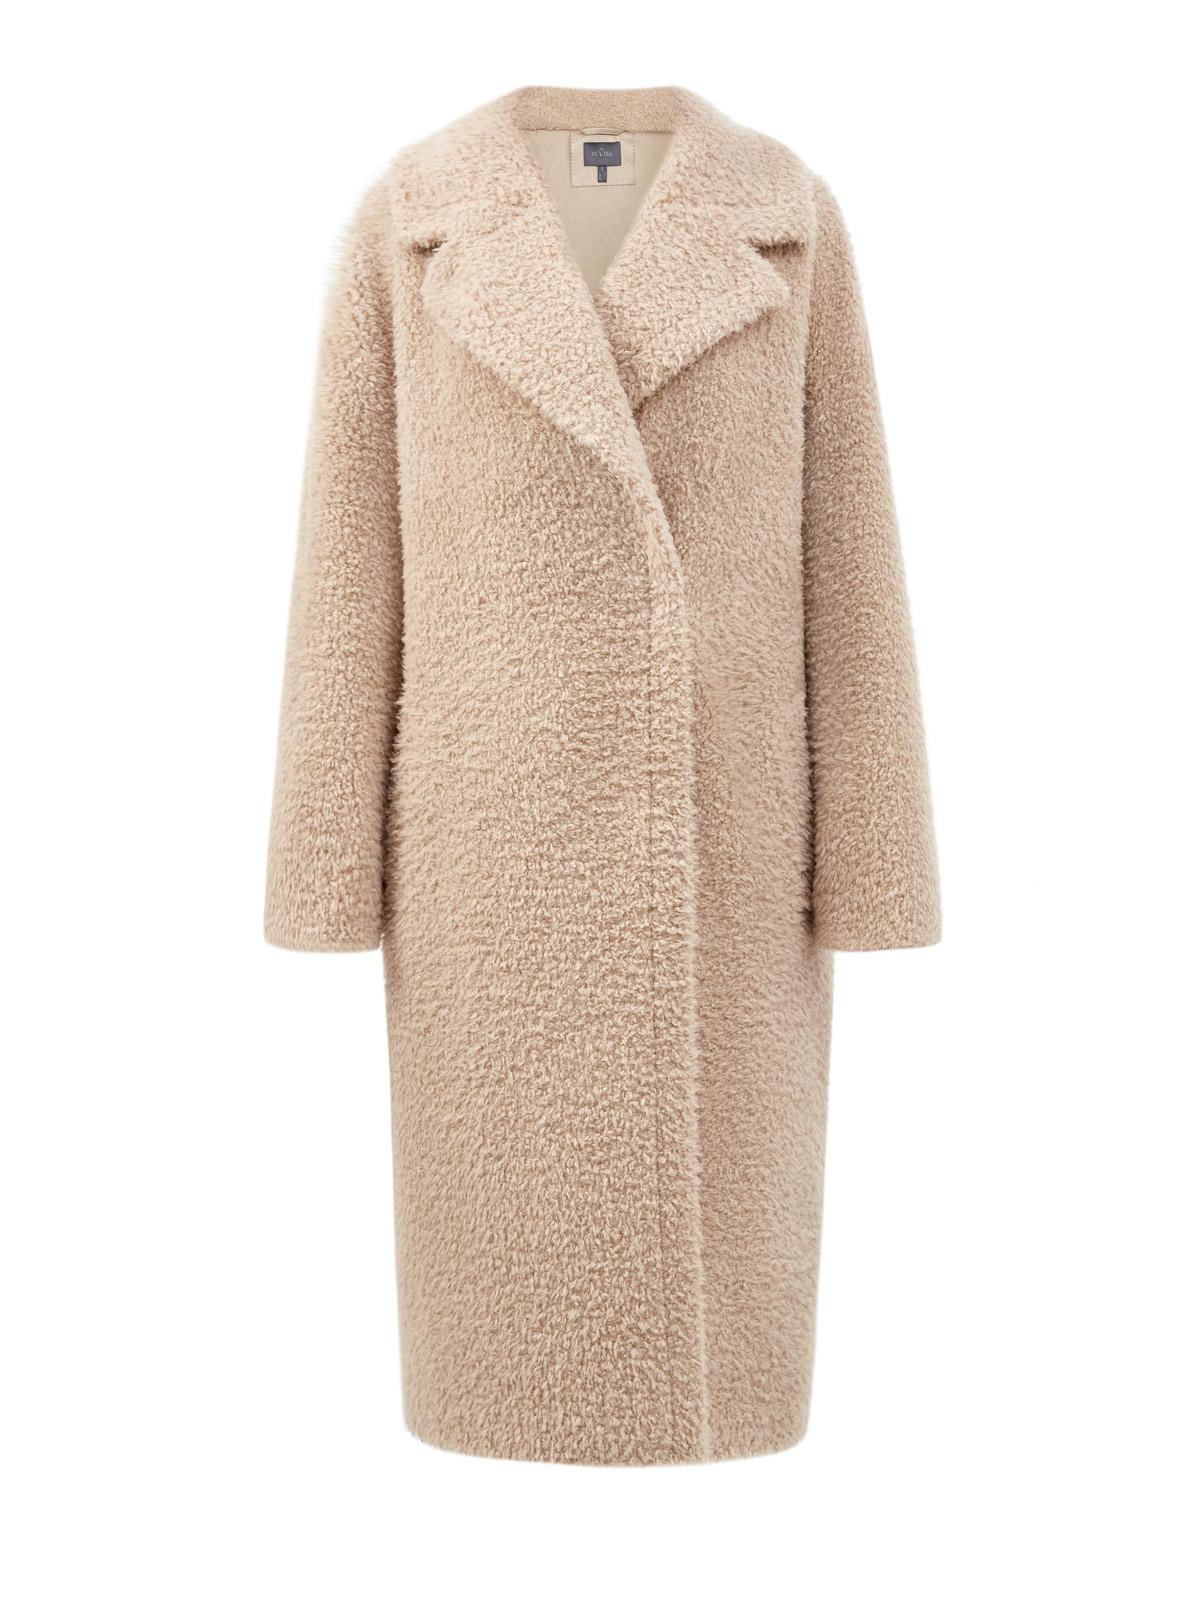 Удлиненное пальто из фактурной шерсти мериноса RE VERA, цвет бежевый, размер 44;42 - фото 1